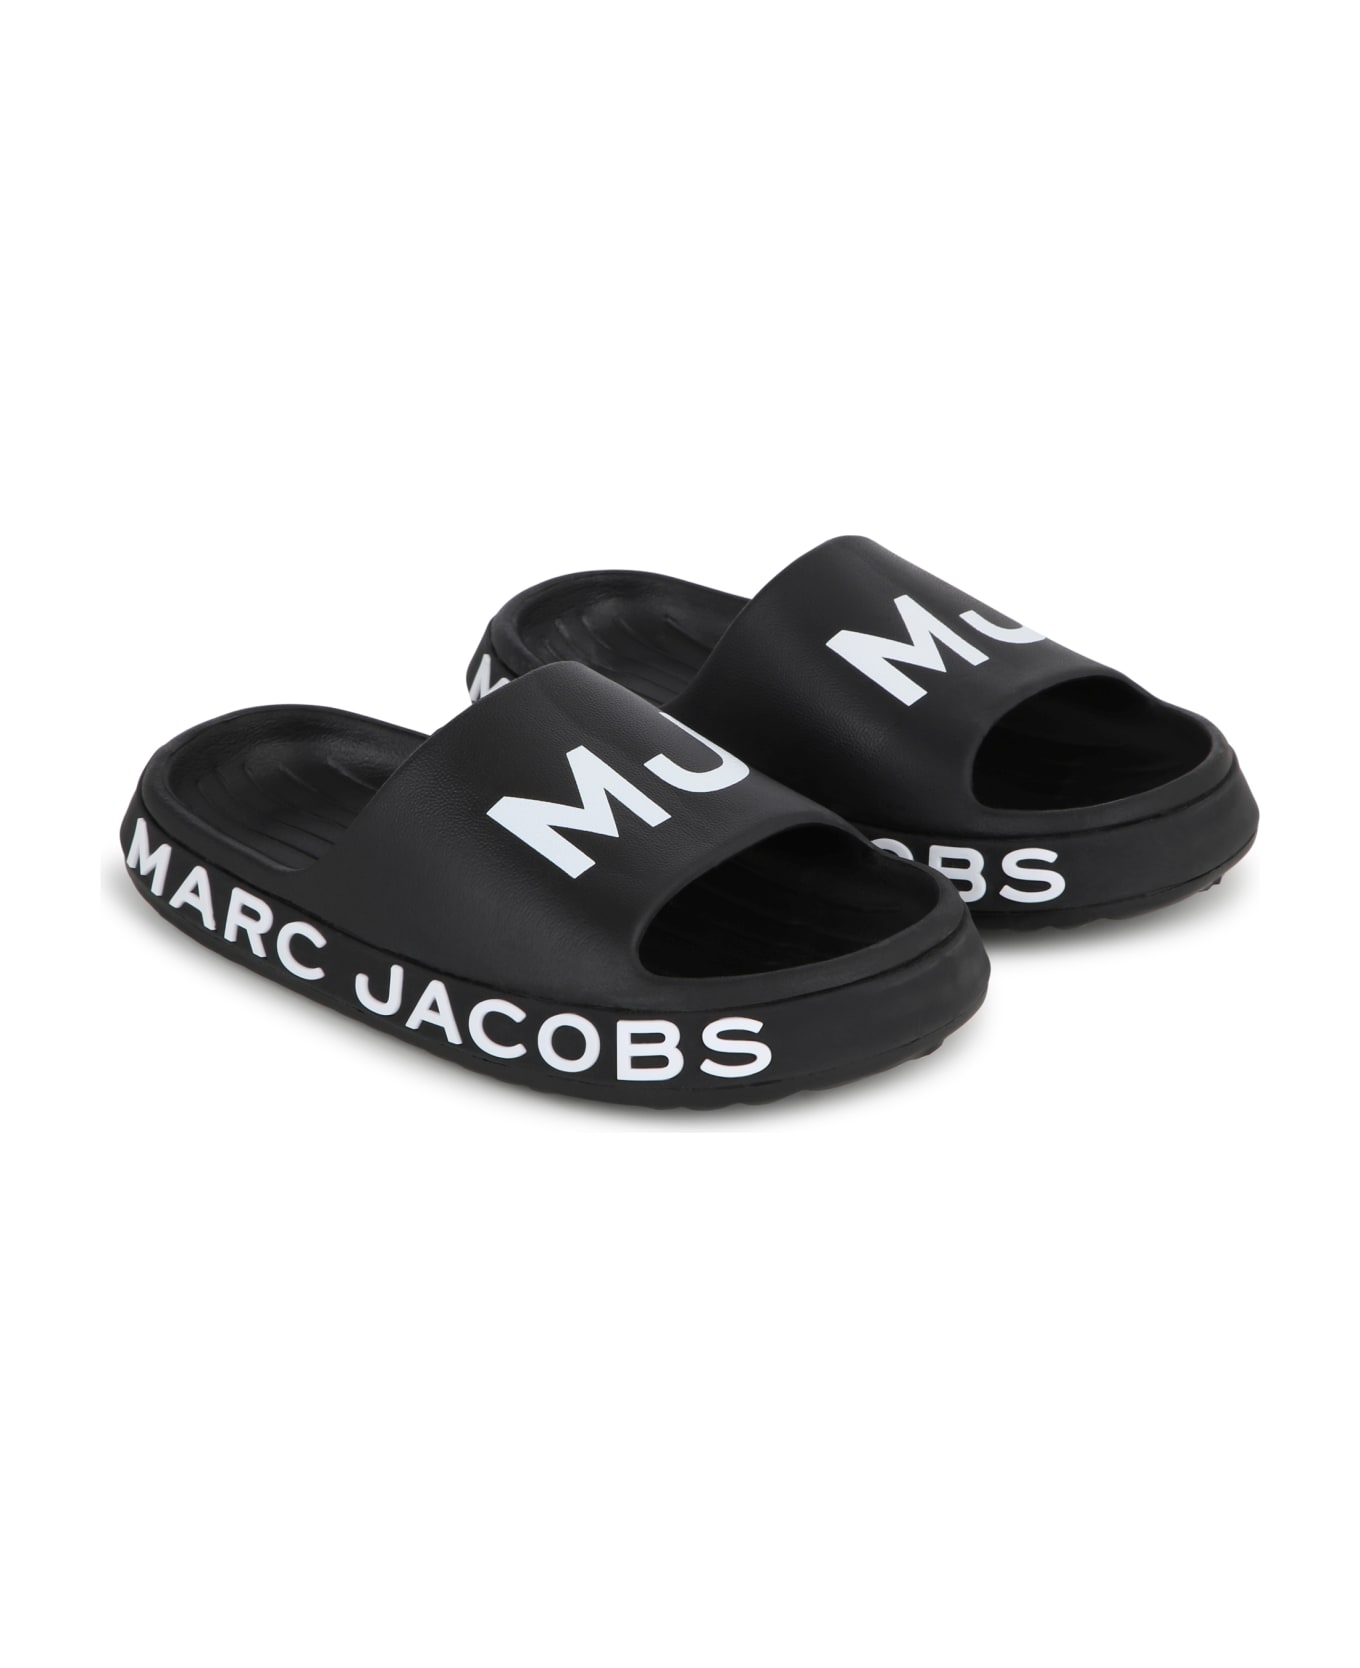 Marc Jacobs Ciabatte Con Logo - Black シューズ